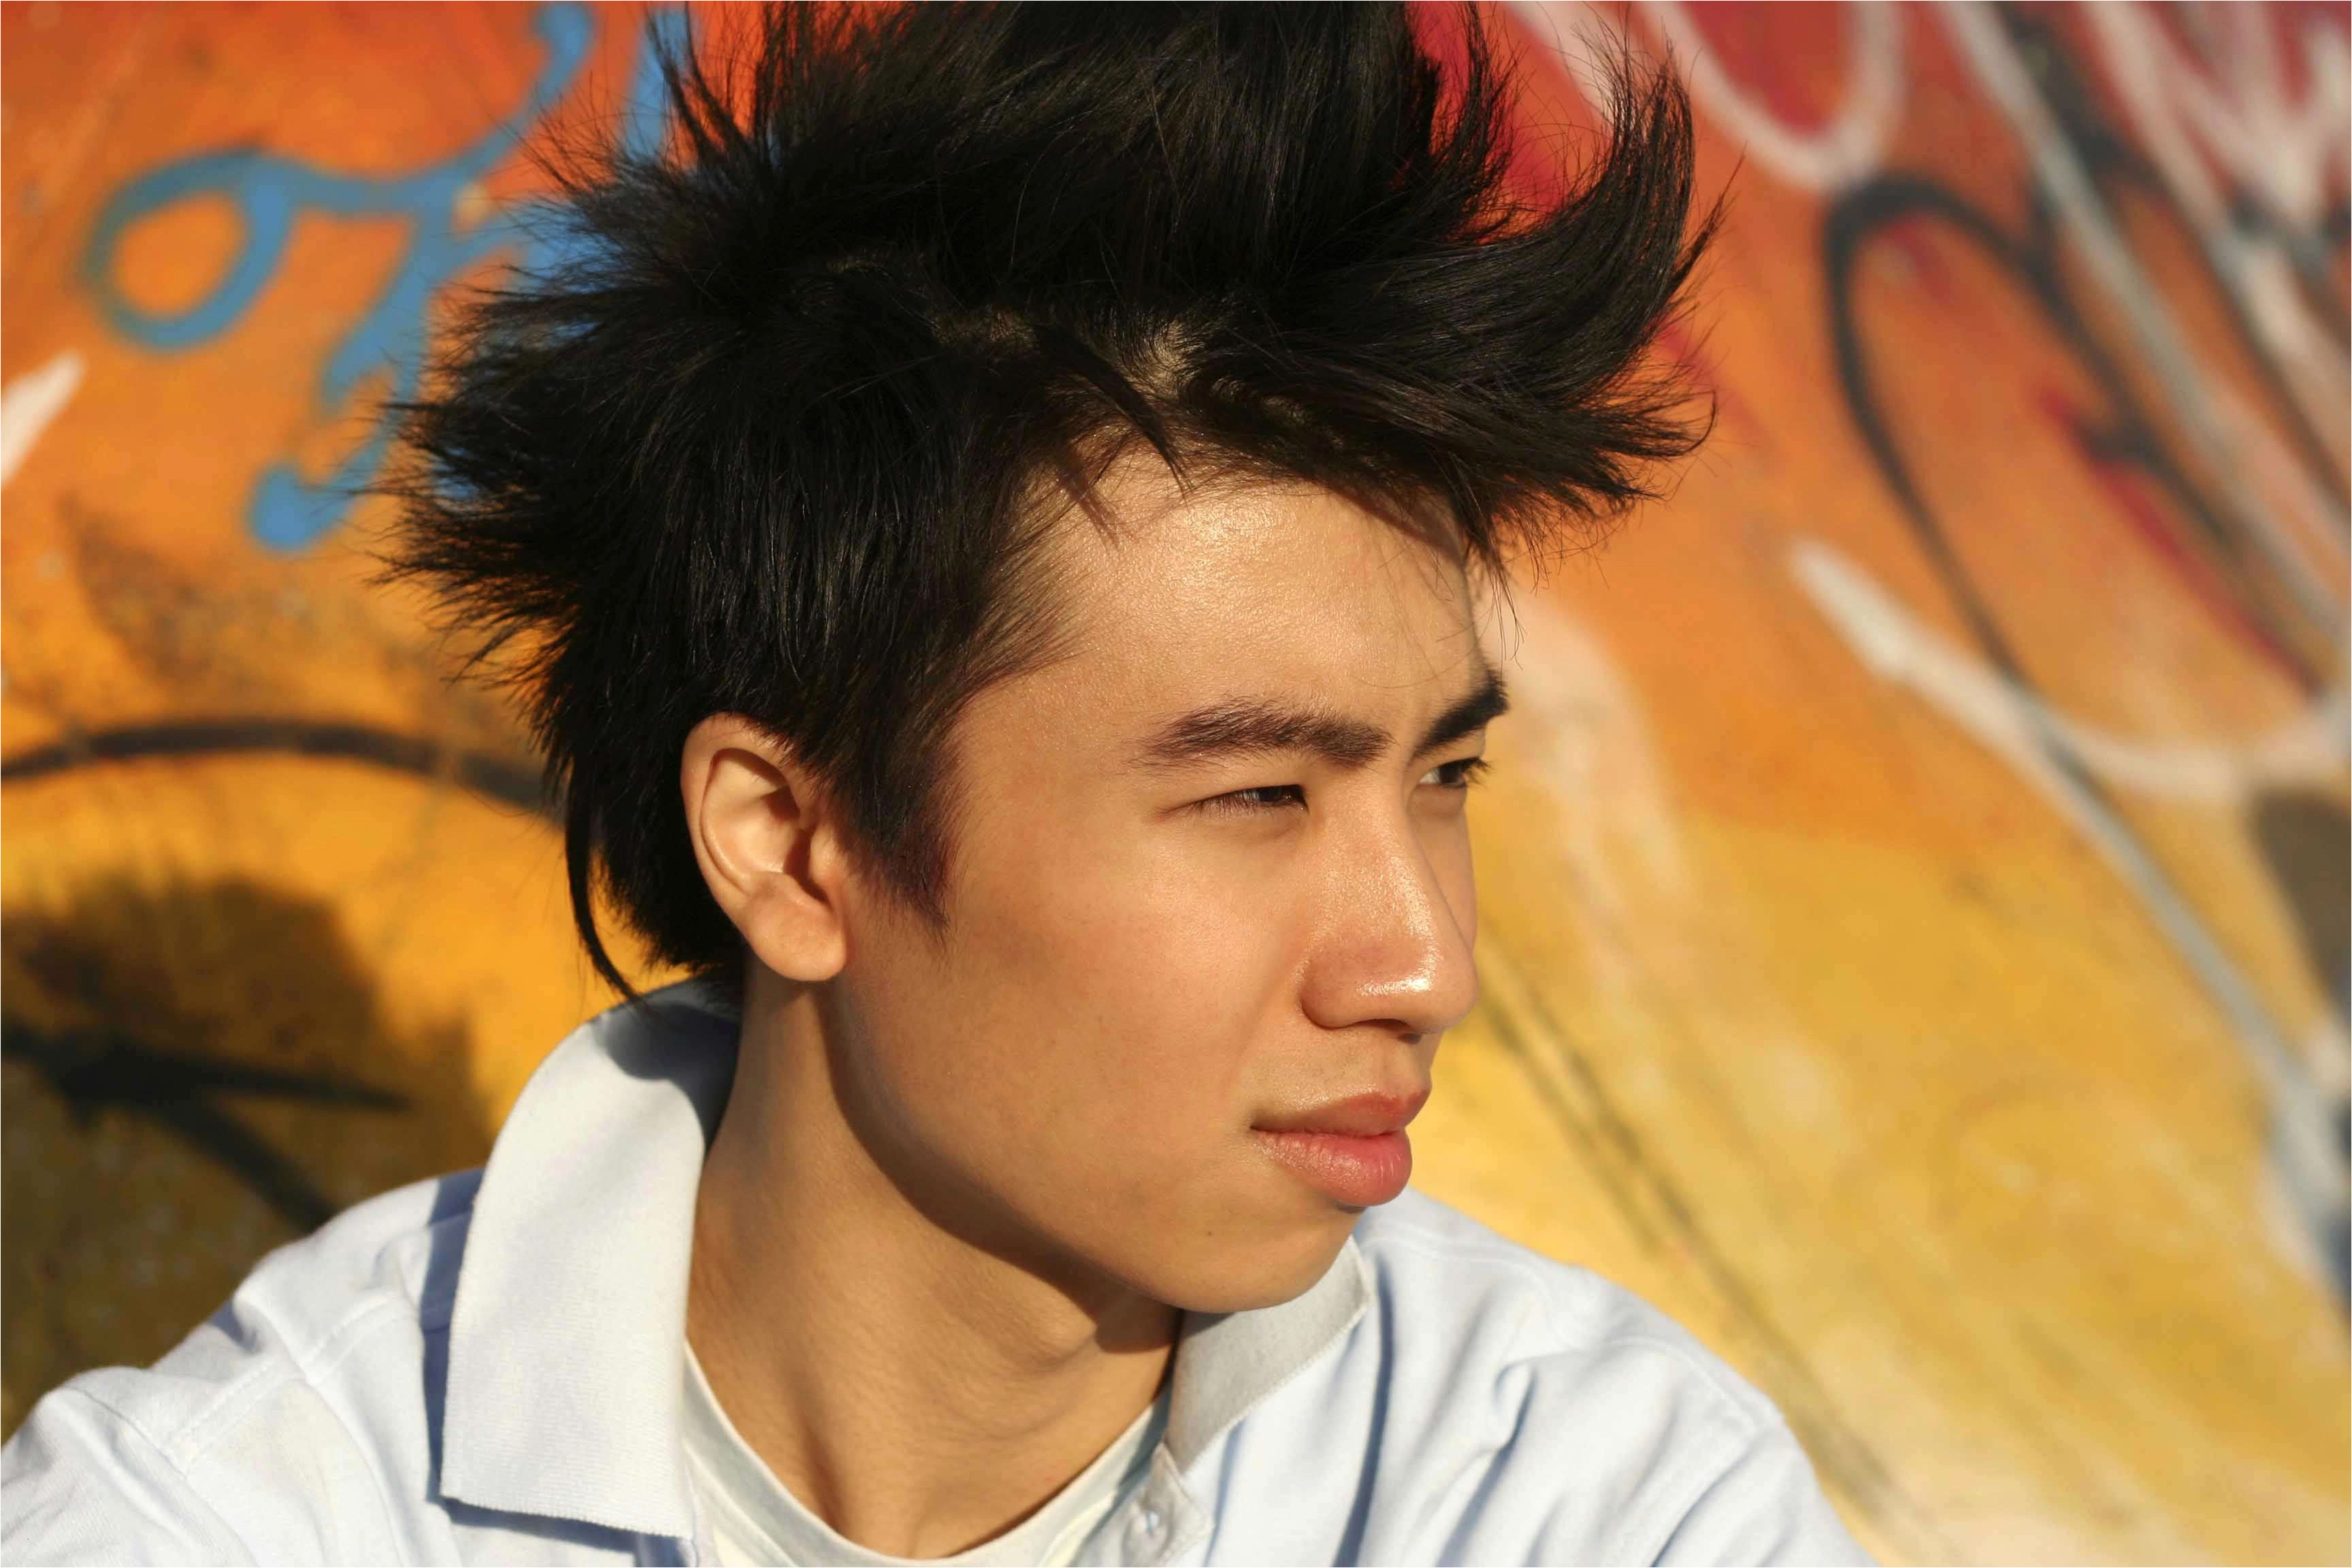 Asian Hair Undercut asian Men Hair Styles Elegant Undercut Hairstyle asian Beautiful My